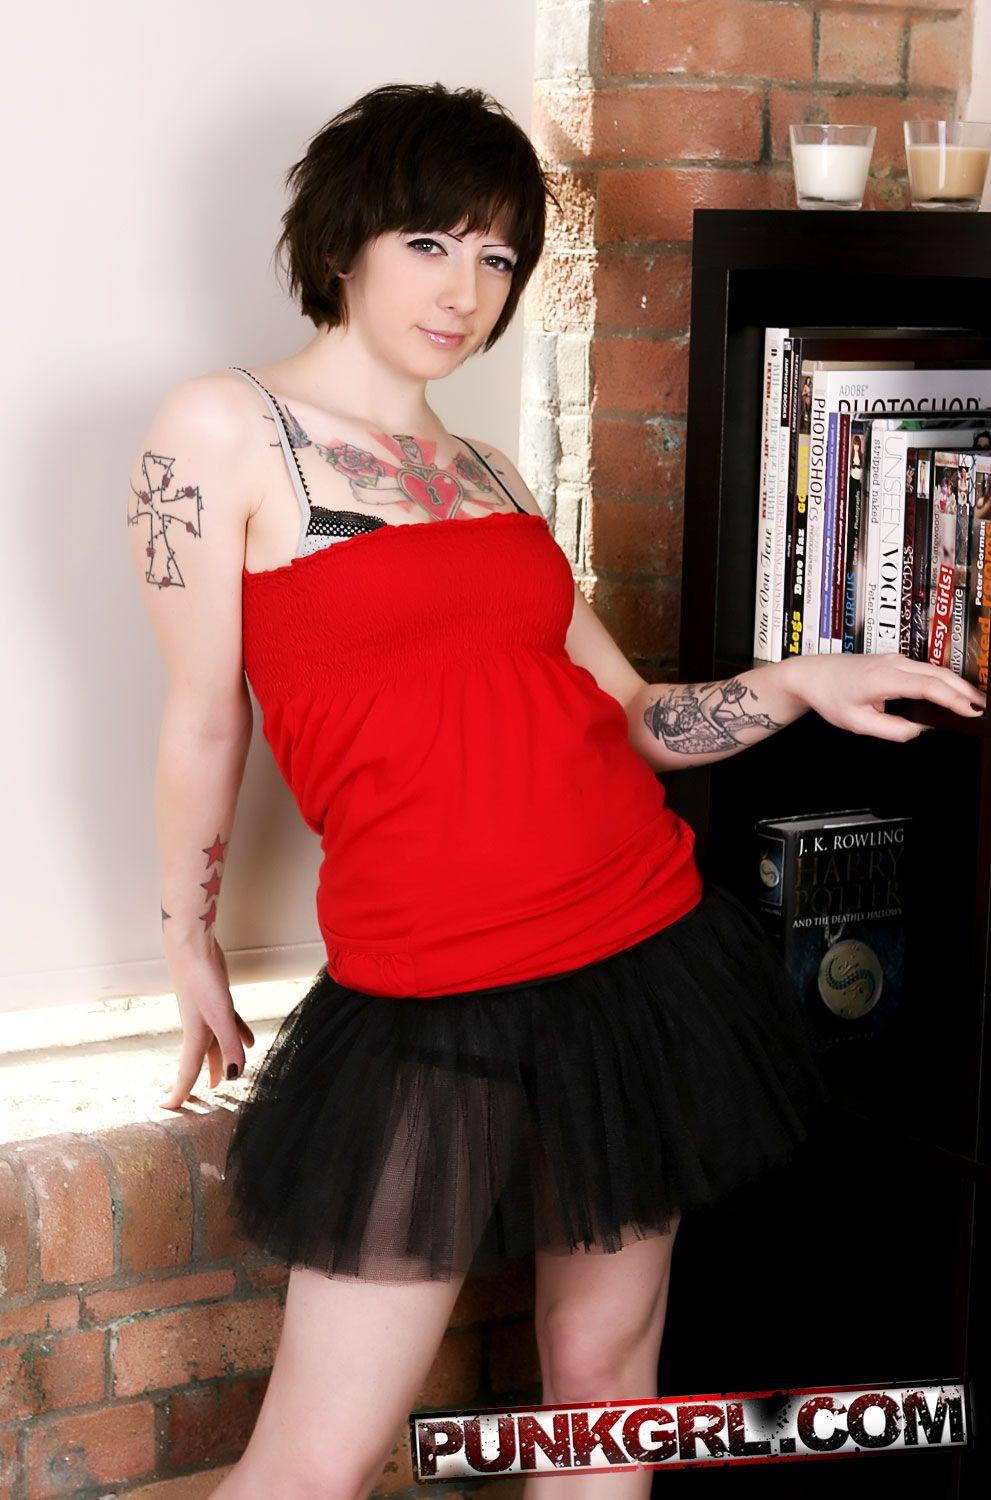 Fotos de la joven punk blue mostrando sus tatuajes
 #60765902